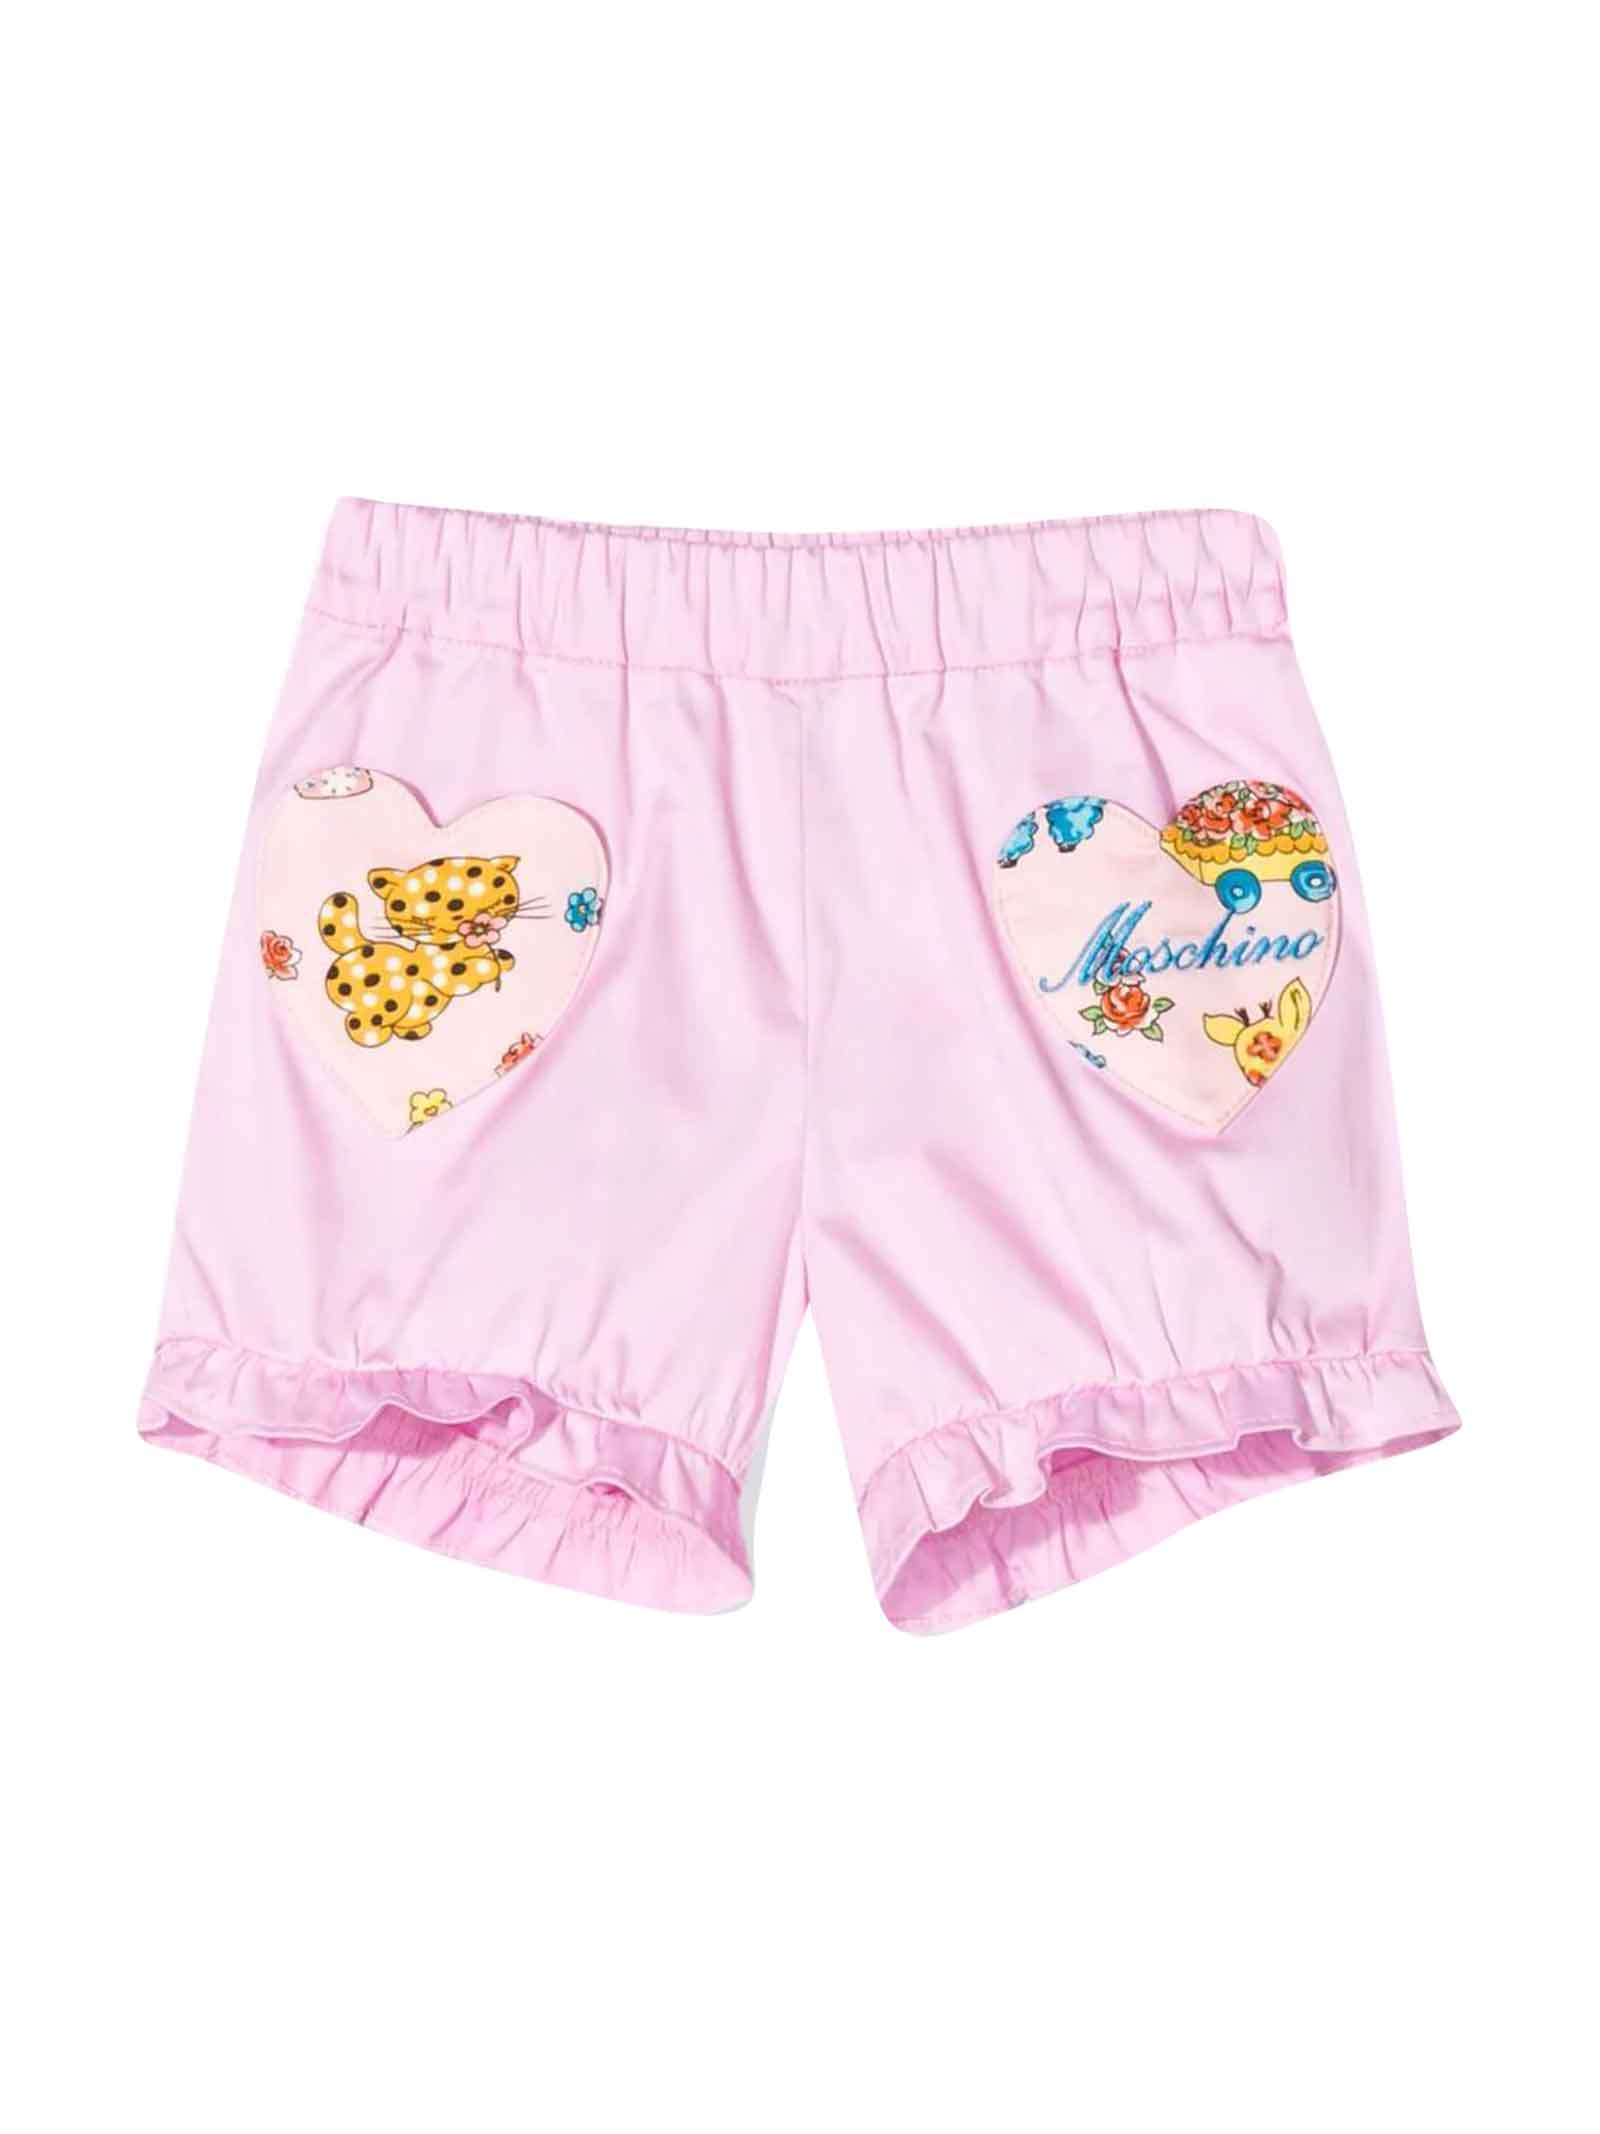 Moschino Pink Newborn Shorts